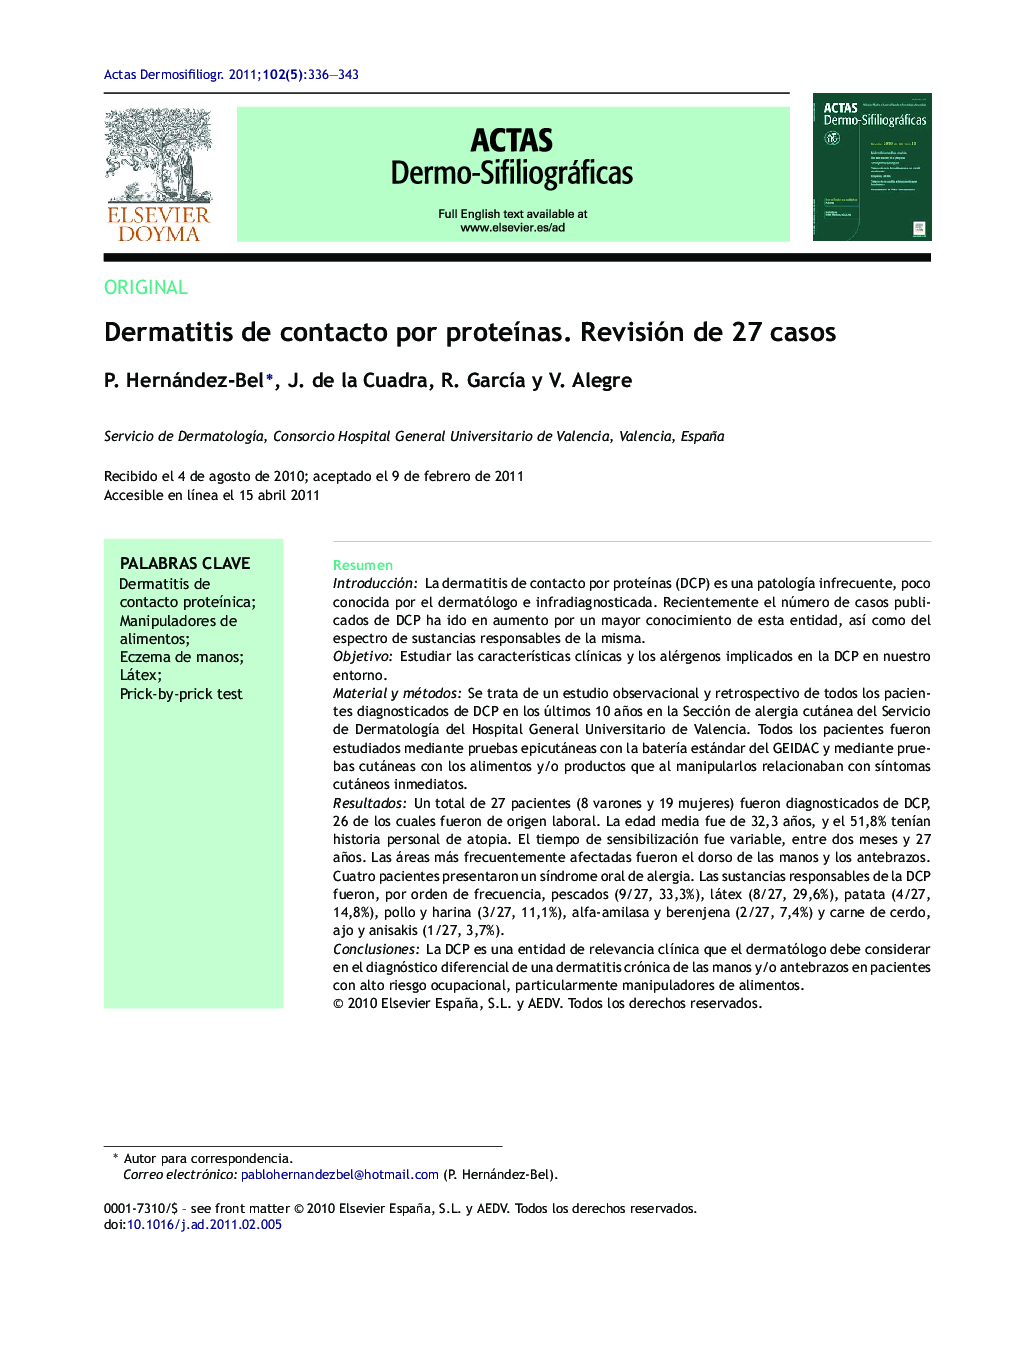 Dermatitis de contacto por proteínas. Revisión de 27 casos